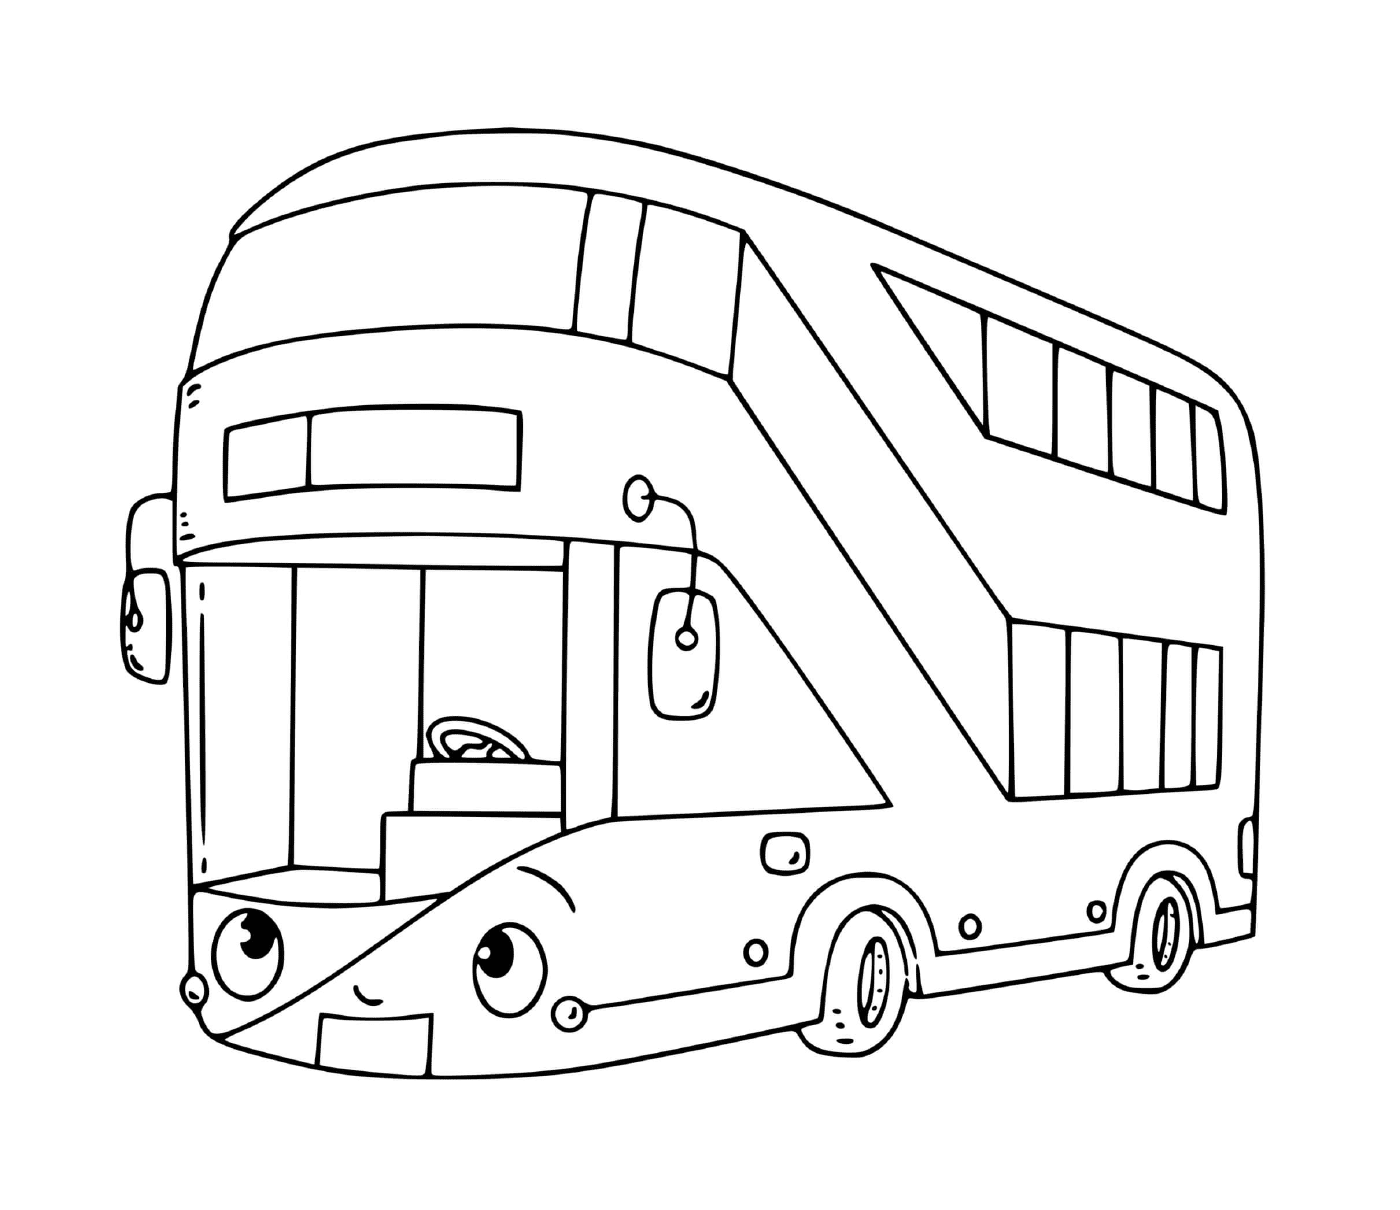  Ein zweistöckiger Bus für den Transport 